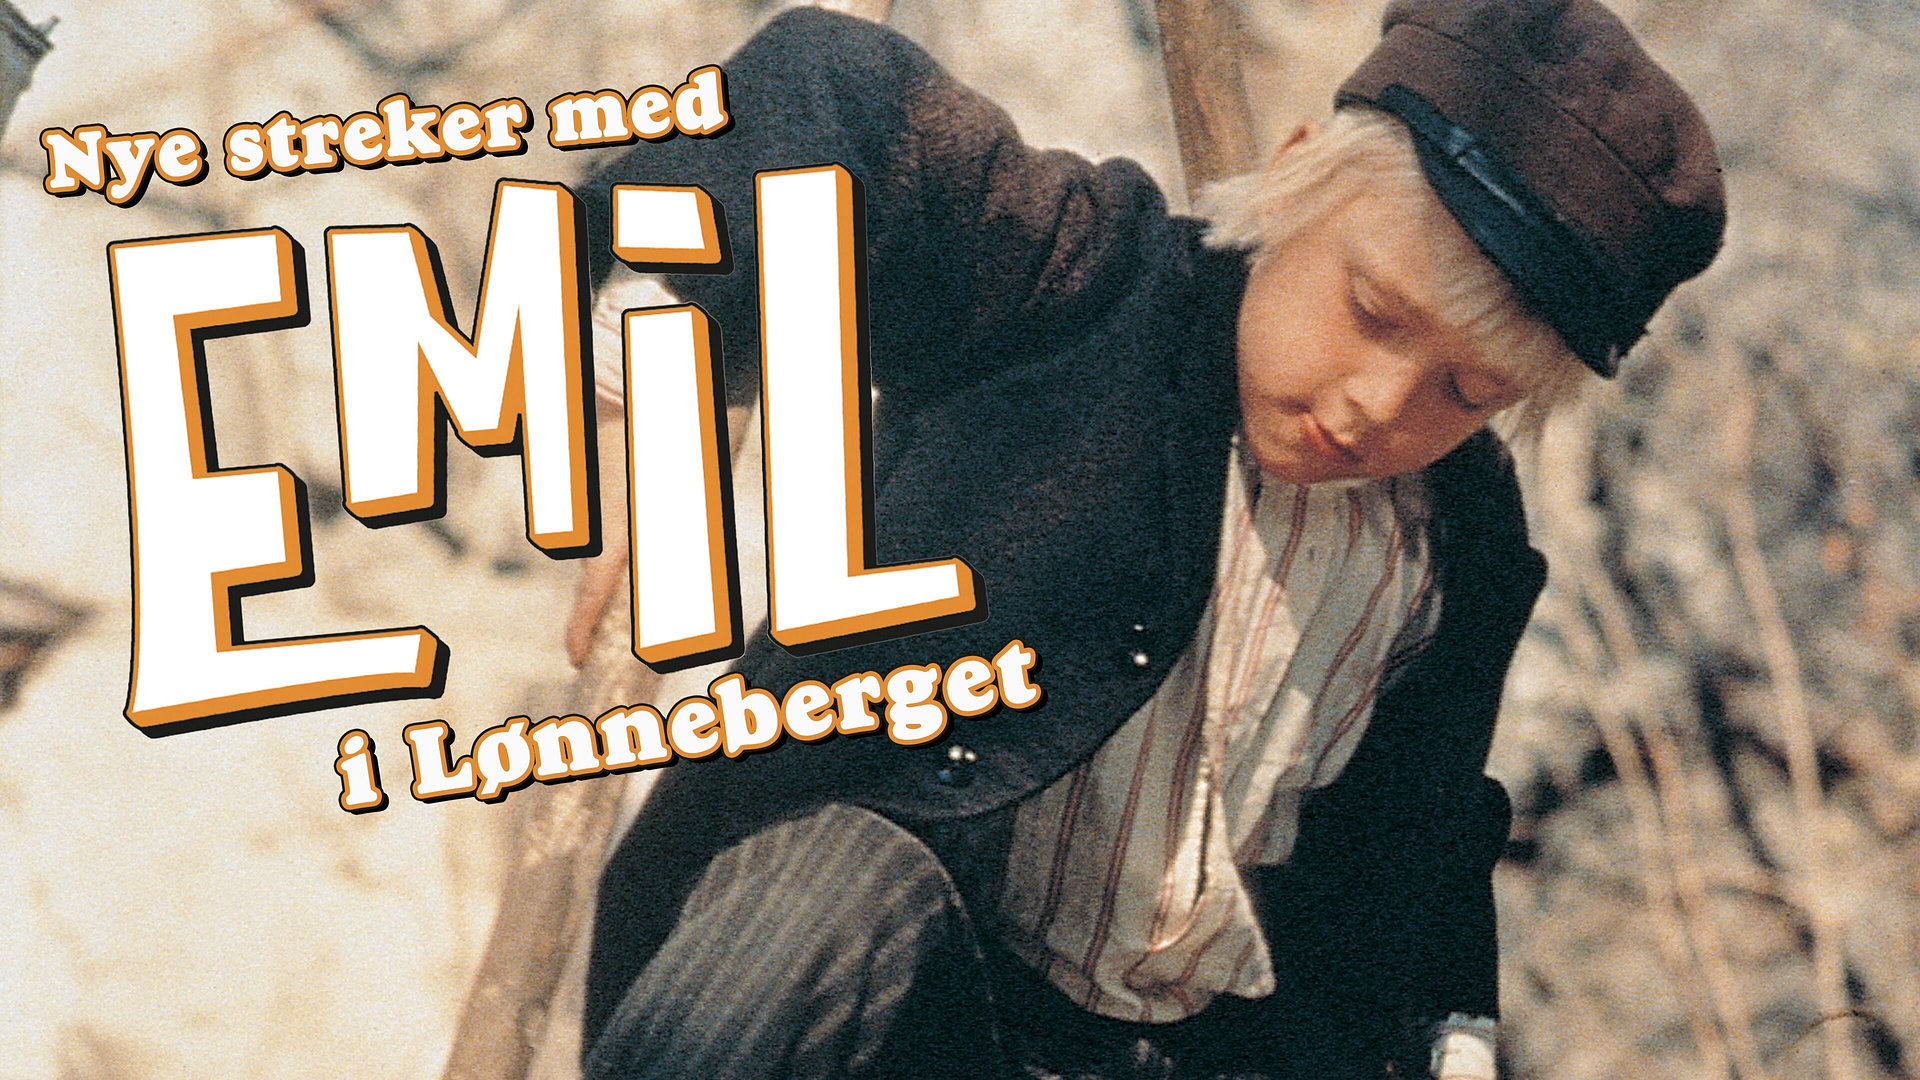 Nye streker med Emil i Lønneberget (Norsk tale)